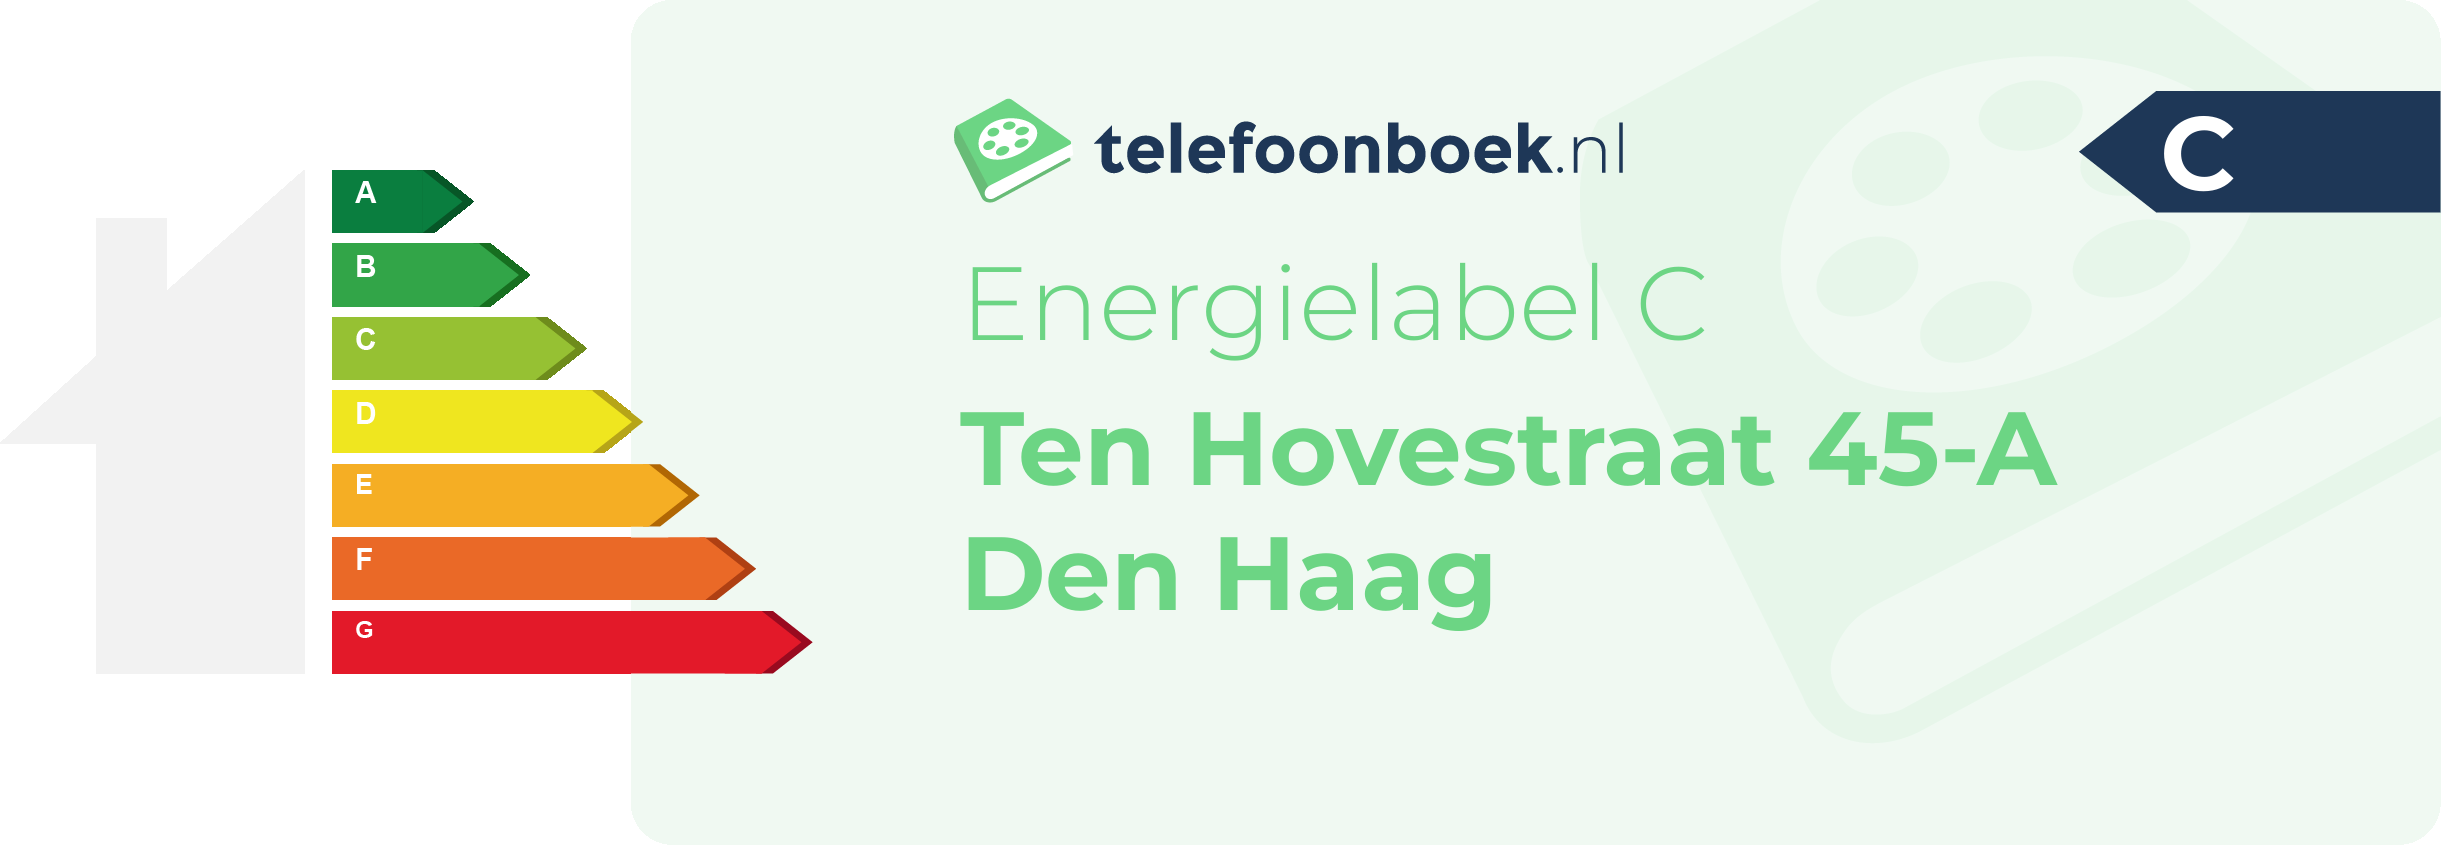 Energielabel Ten Hovestraat 45-A Den Haag